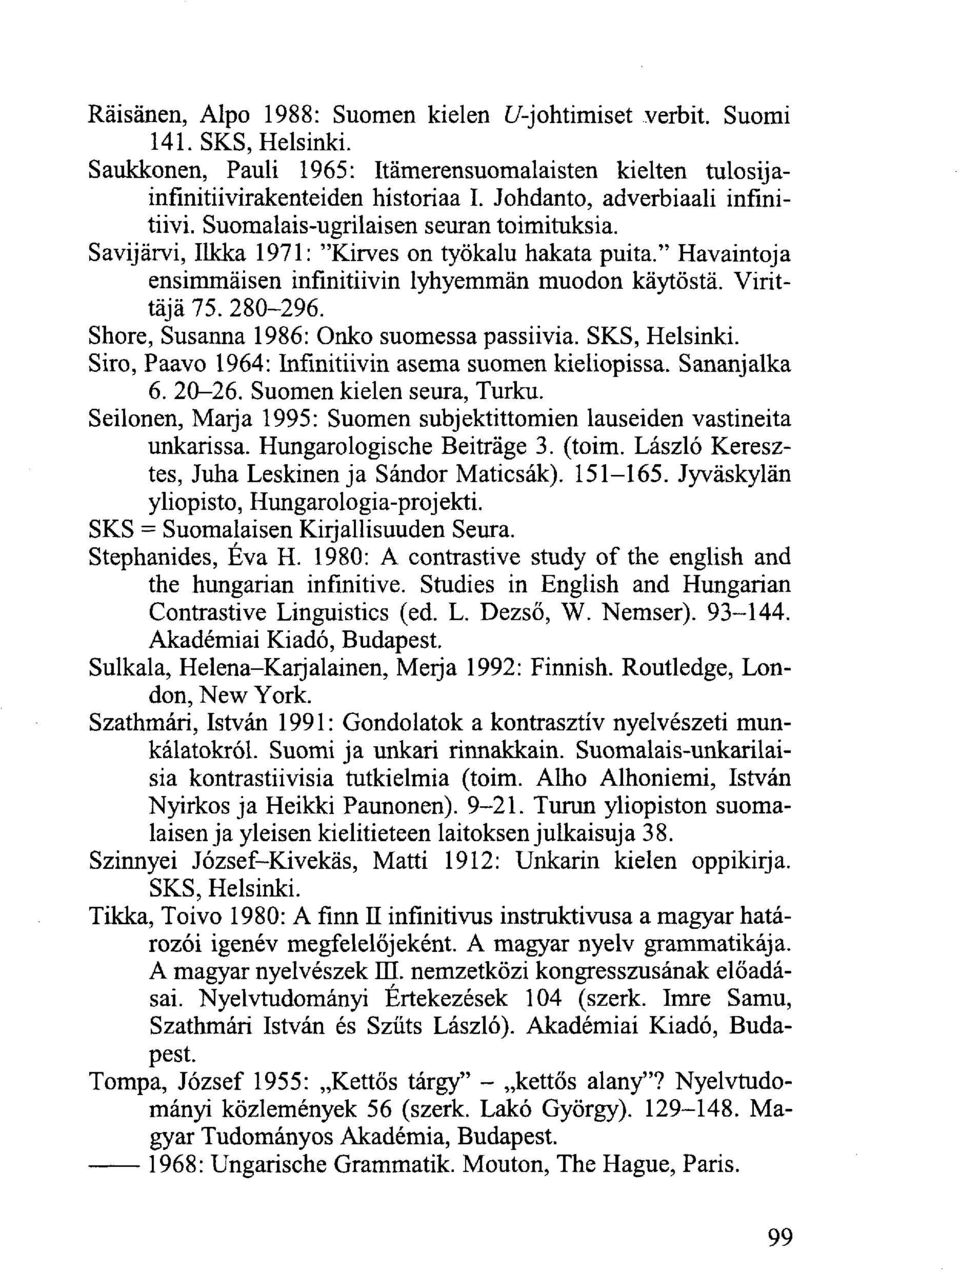 Shore, Susanna 1986: Onko suomessa passiivia. Siro, Paavo 1964: Infinitiivin asema suomen kieliopissa. Sananjalka 6. 20-26. Suomen kielen seura, Turku.